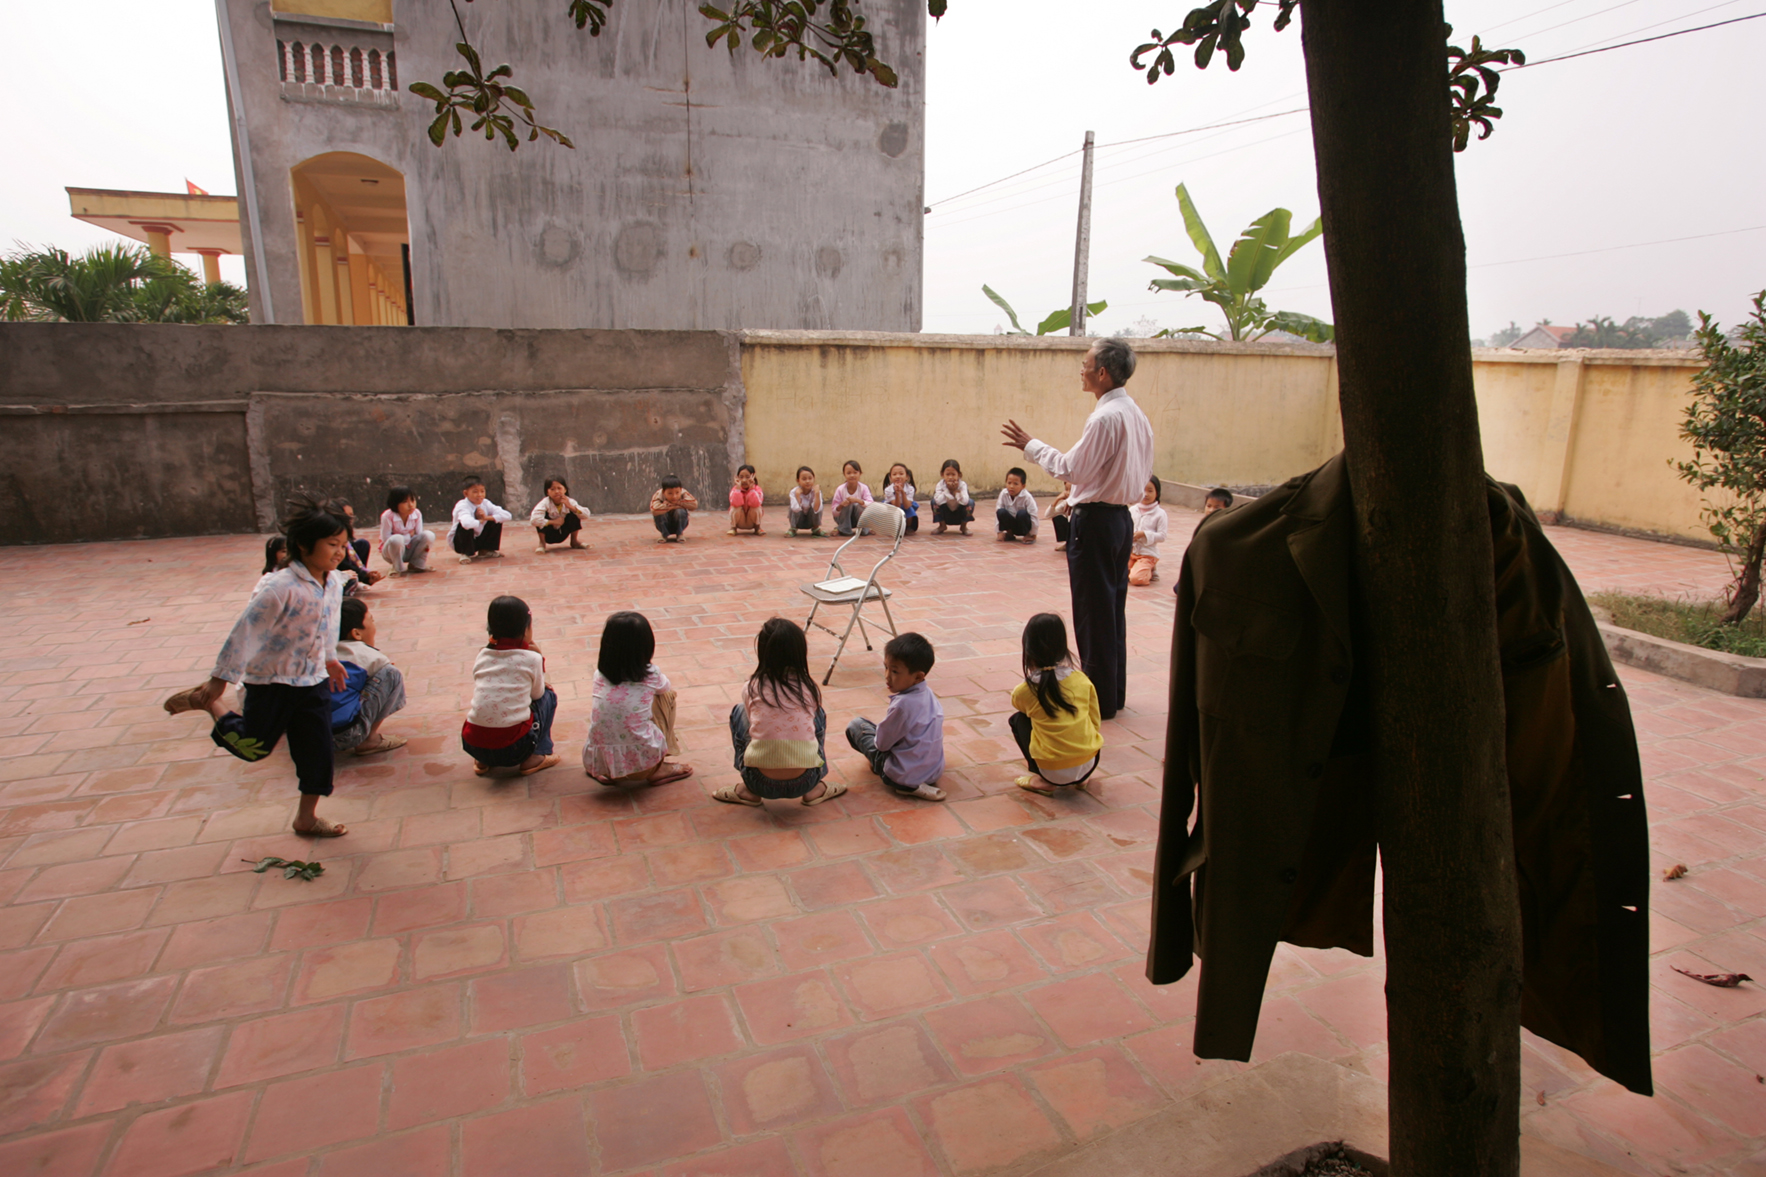  School. Vietnam, 2007 